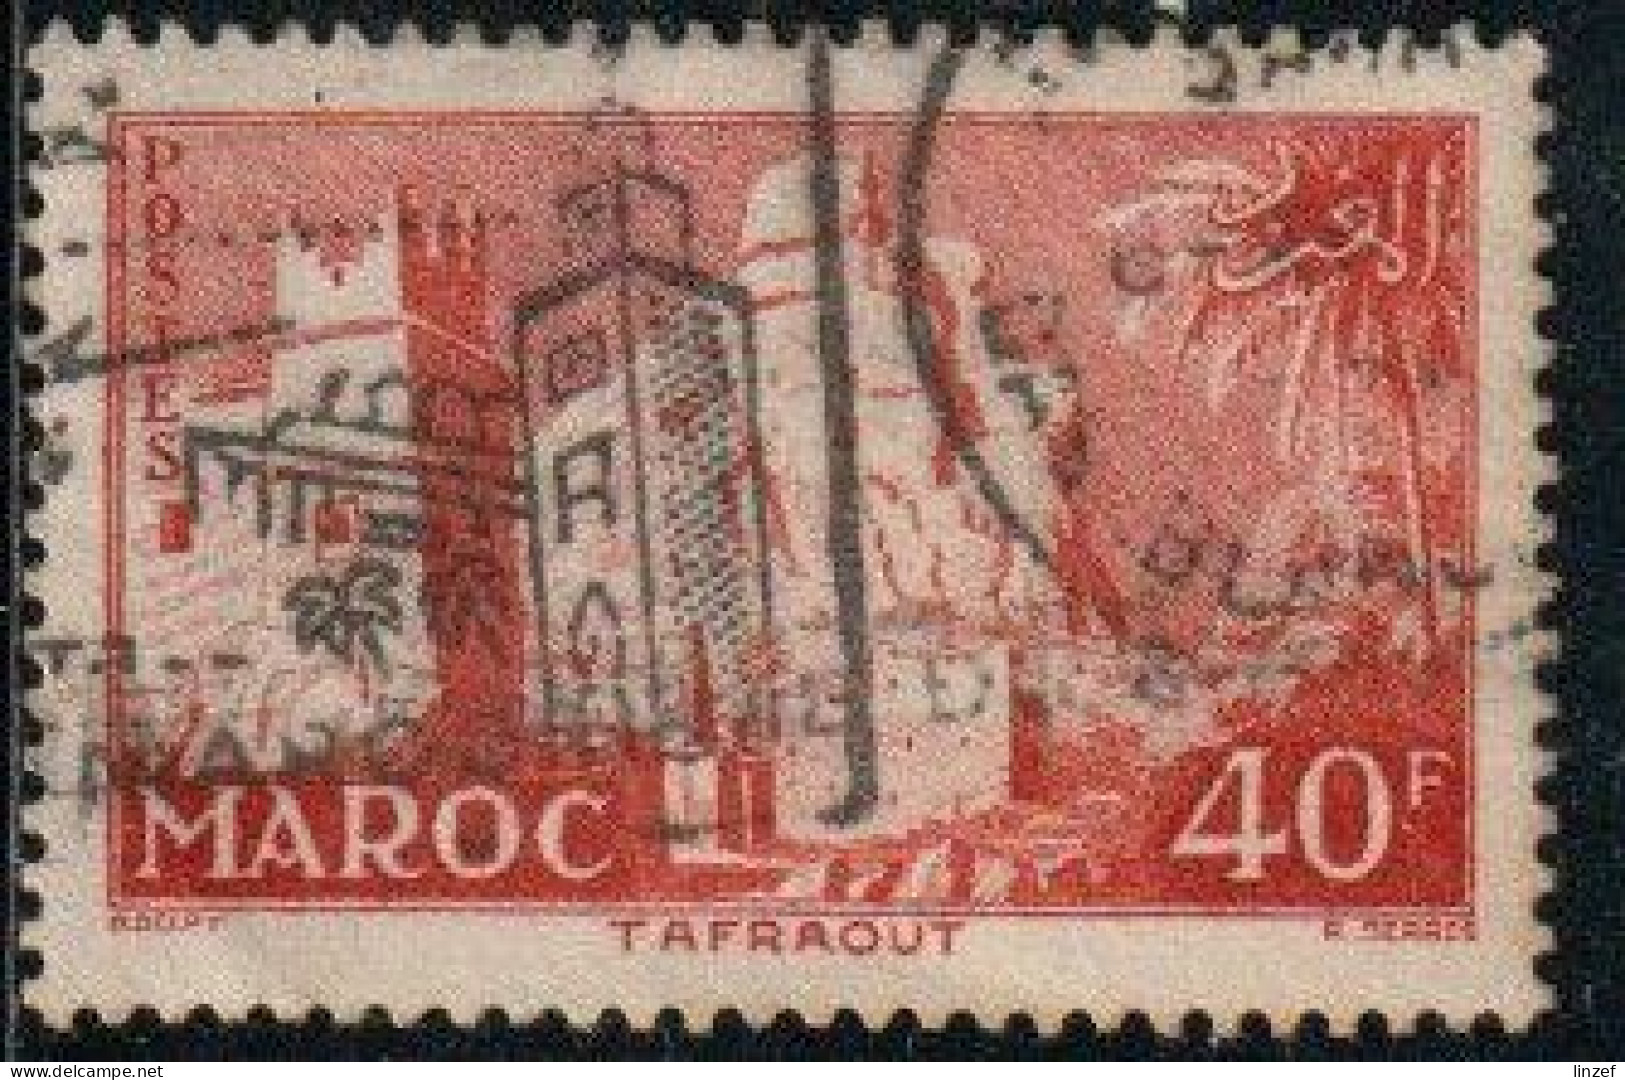 Maroc 1955 Yv. N°359 - 40f Rouge-brun Tafraout - Oblitéré - Oblitérés